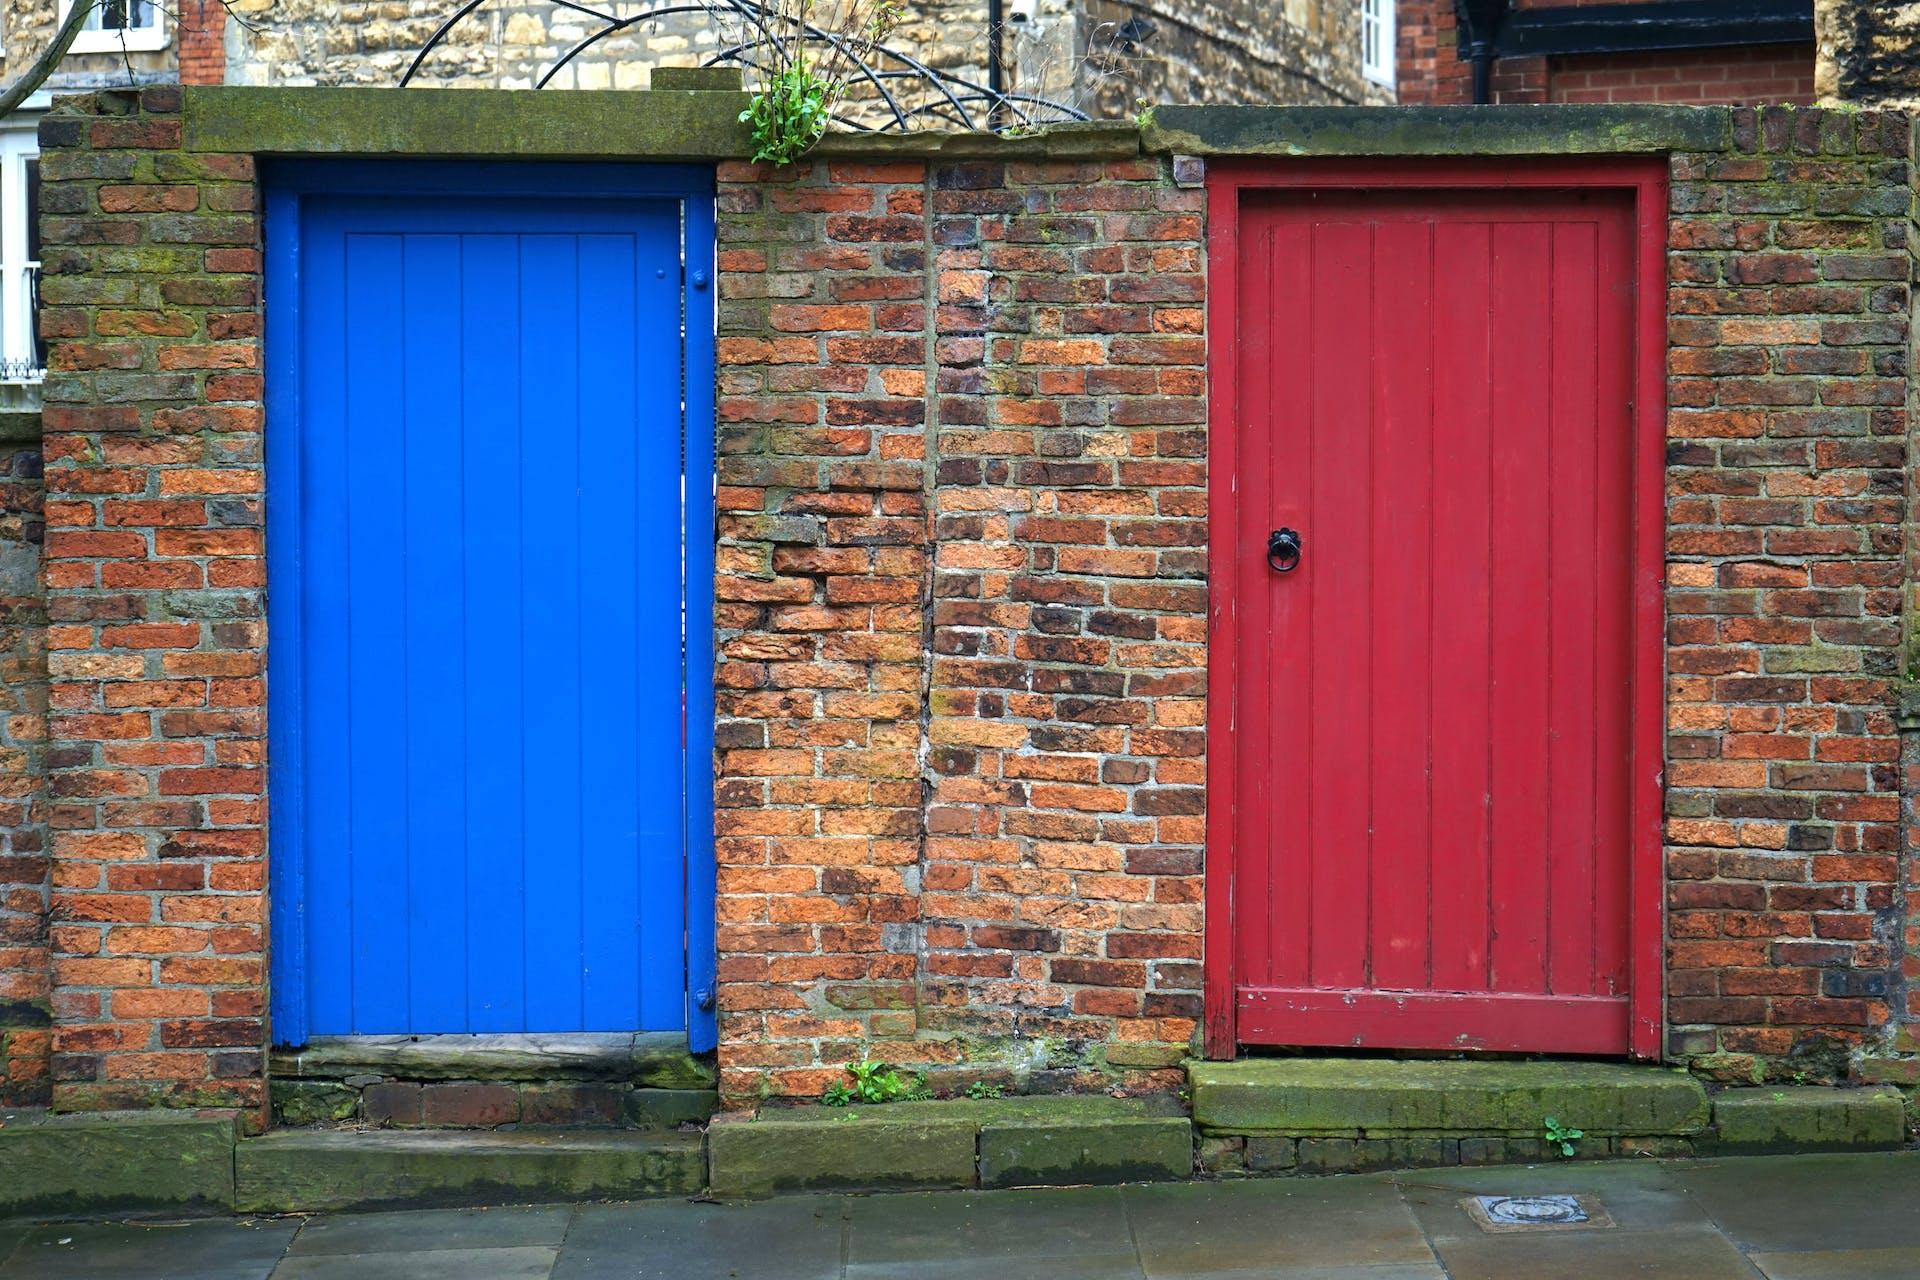 Mauer mit zwei Türen, eine blau, die andere in rot